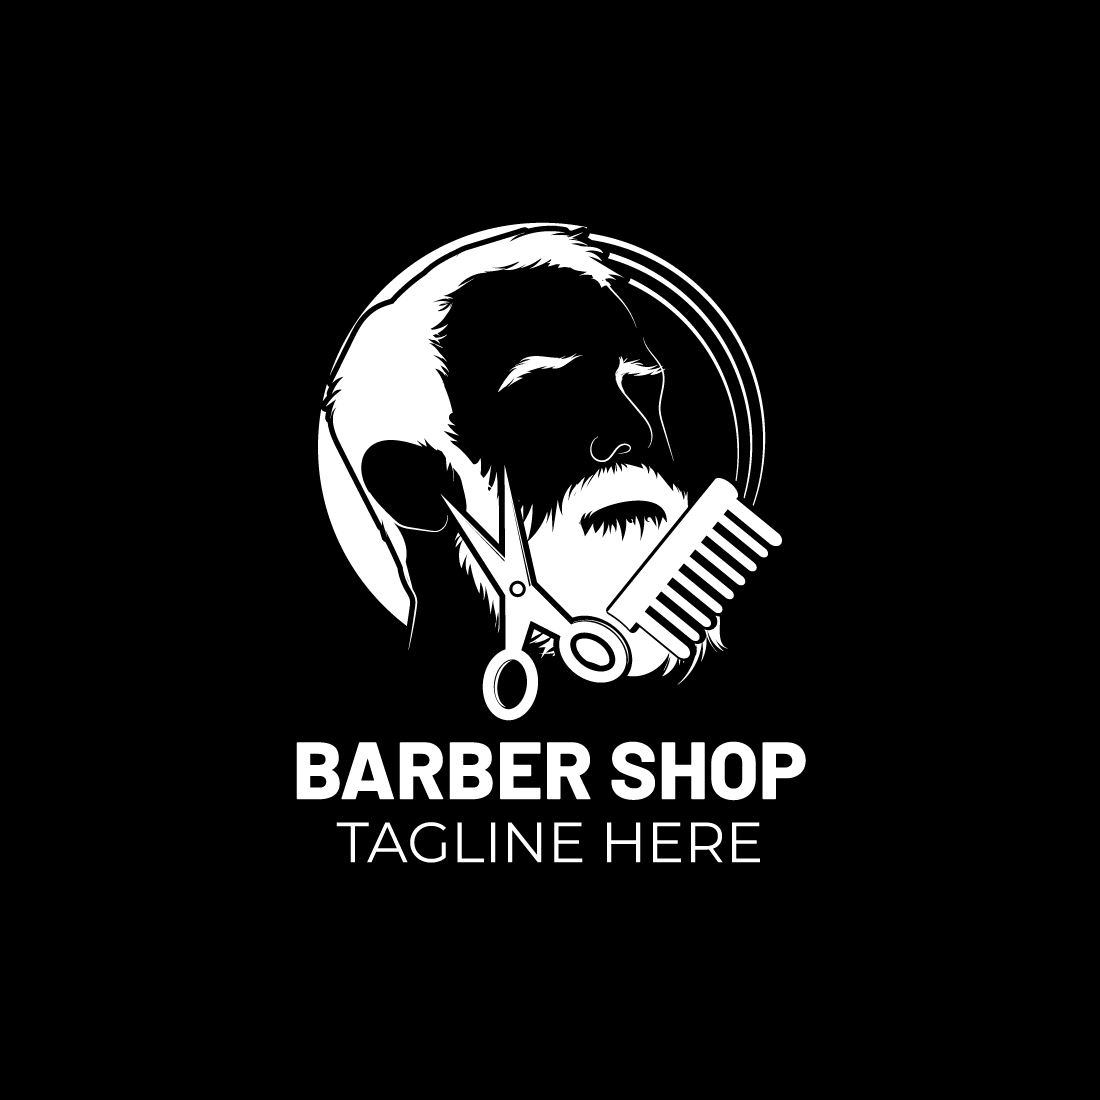 Barber Shop Logo preview image.